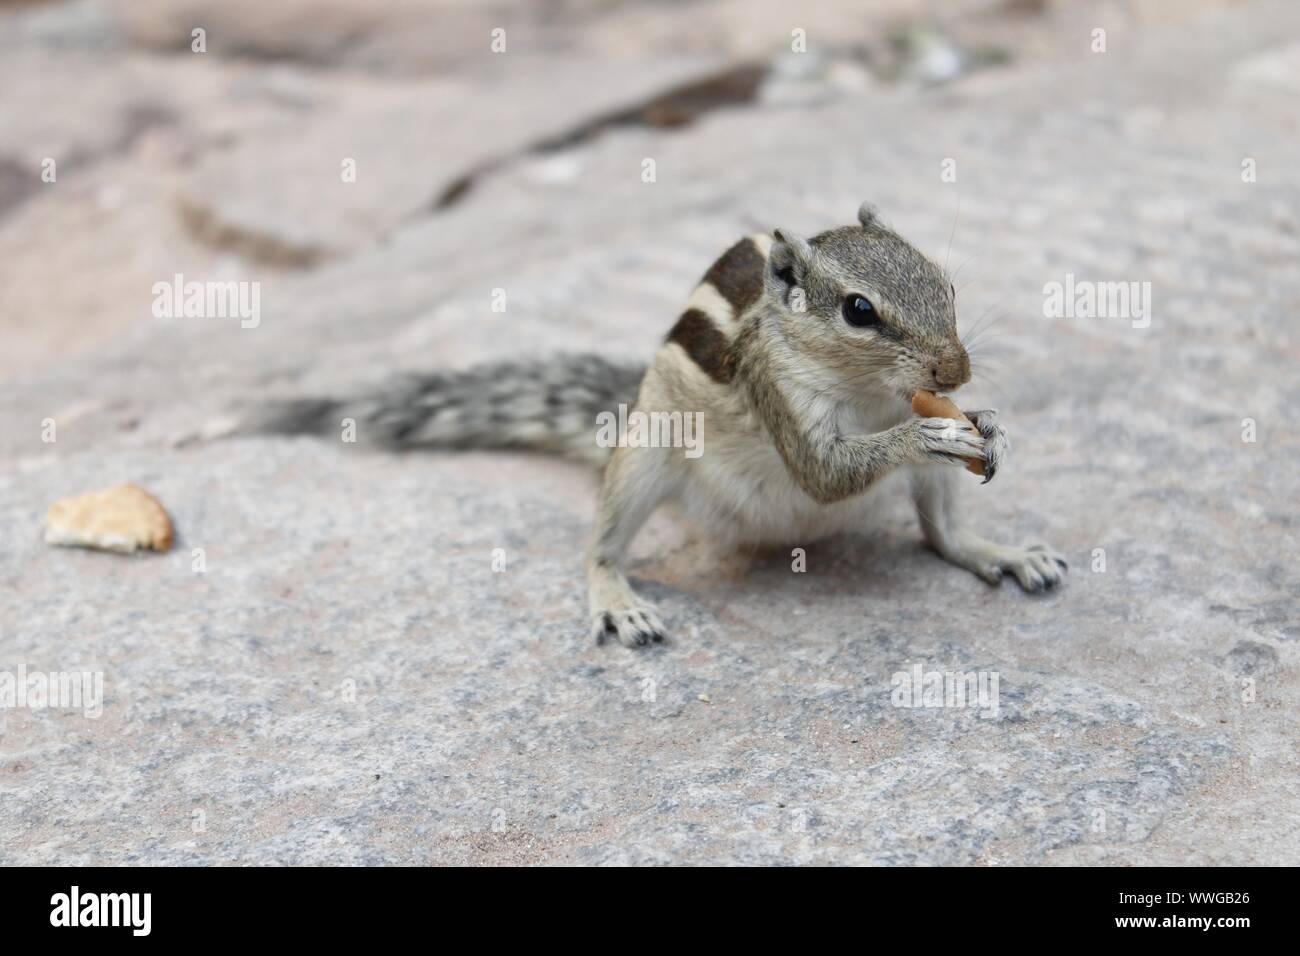 Drei-gestreiften Indischen palm Squirrel (Funambulus palmarum) in einem Park essen ein Stück Brot Stockfoto